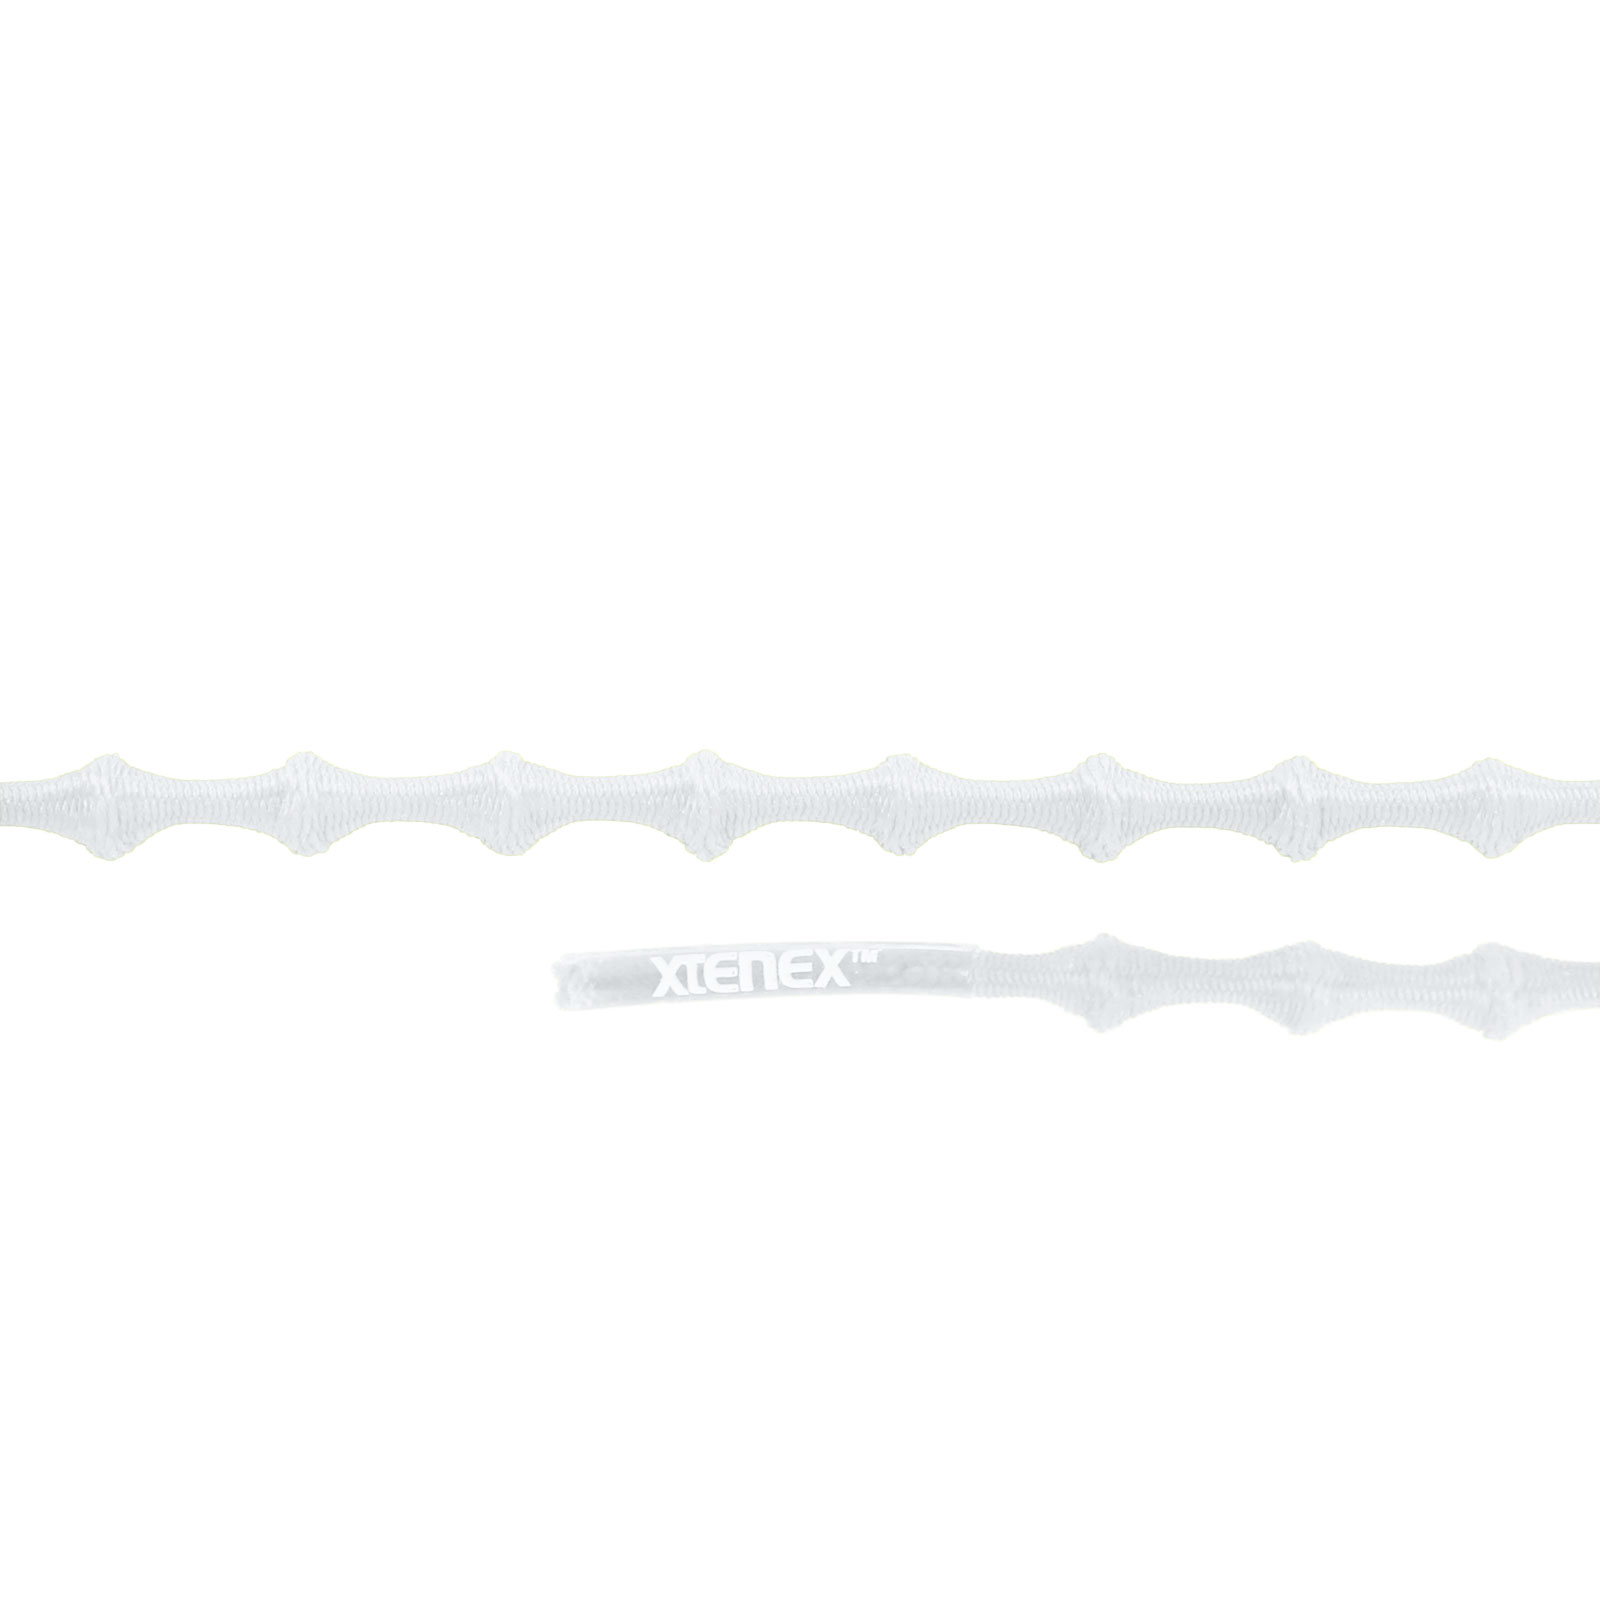 Produktbild von Xtenex Kids Schnürsenkel - 50cm - weiß